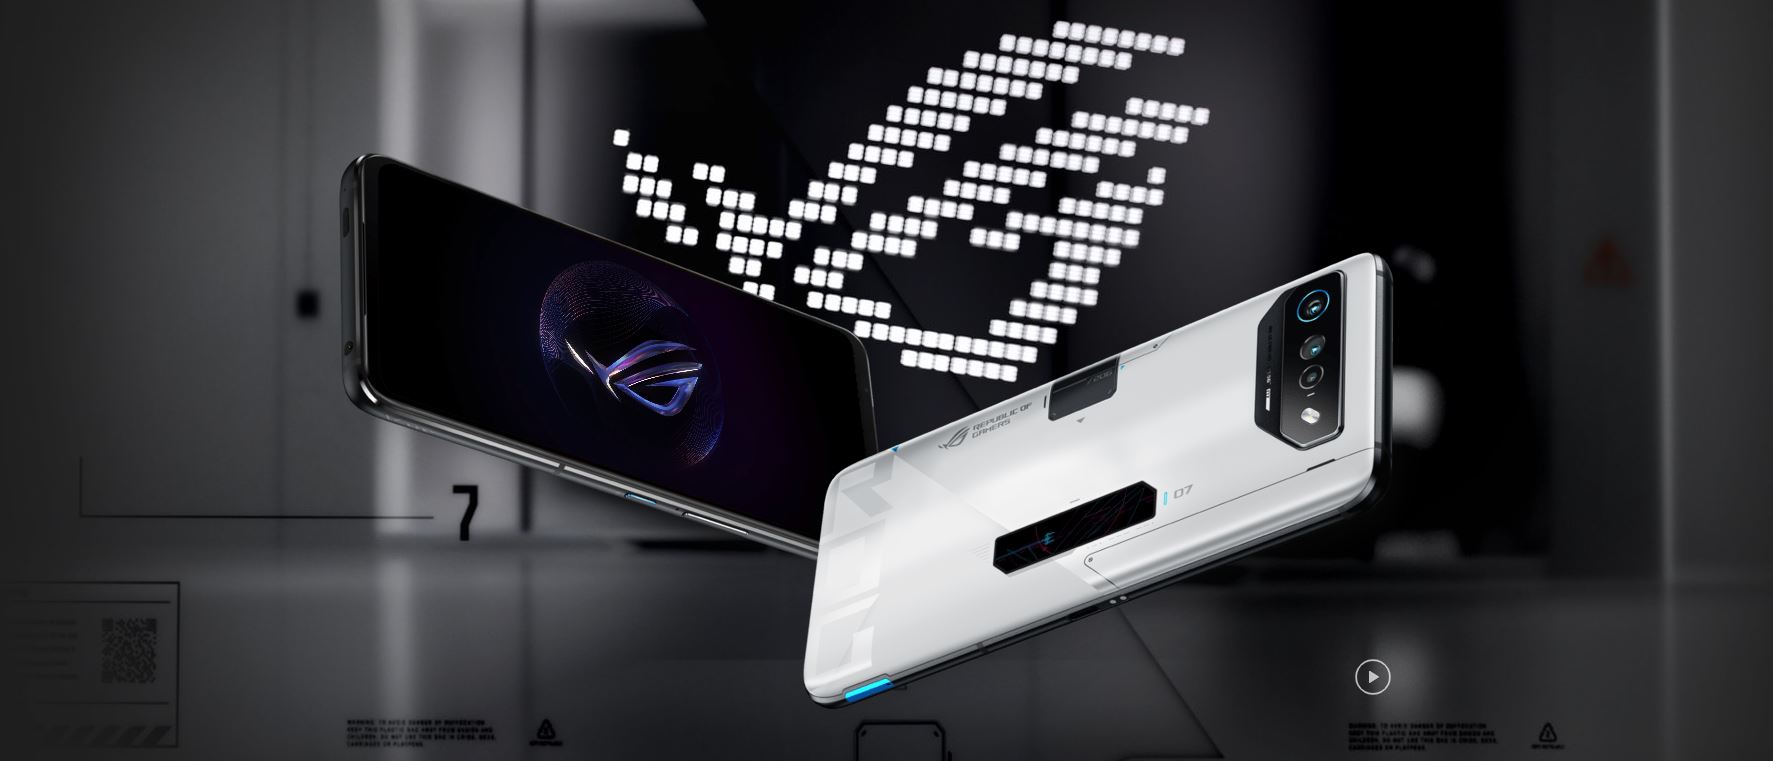 Asus trabaja en ROG Phone 7, su nuevo móvil gaming - 800Noticias